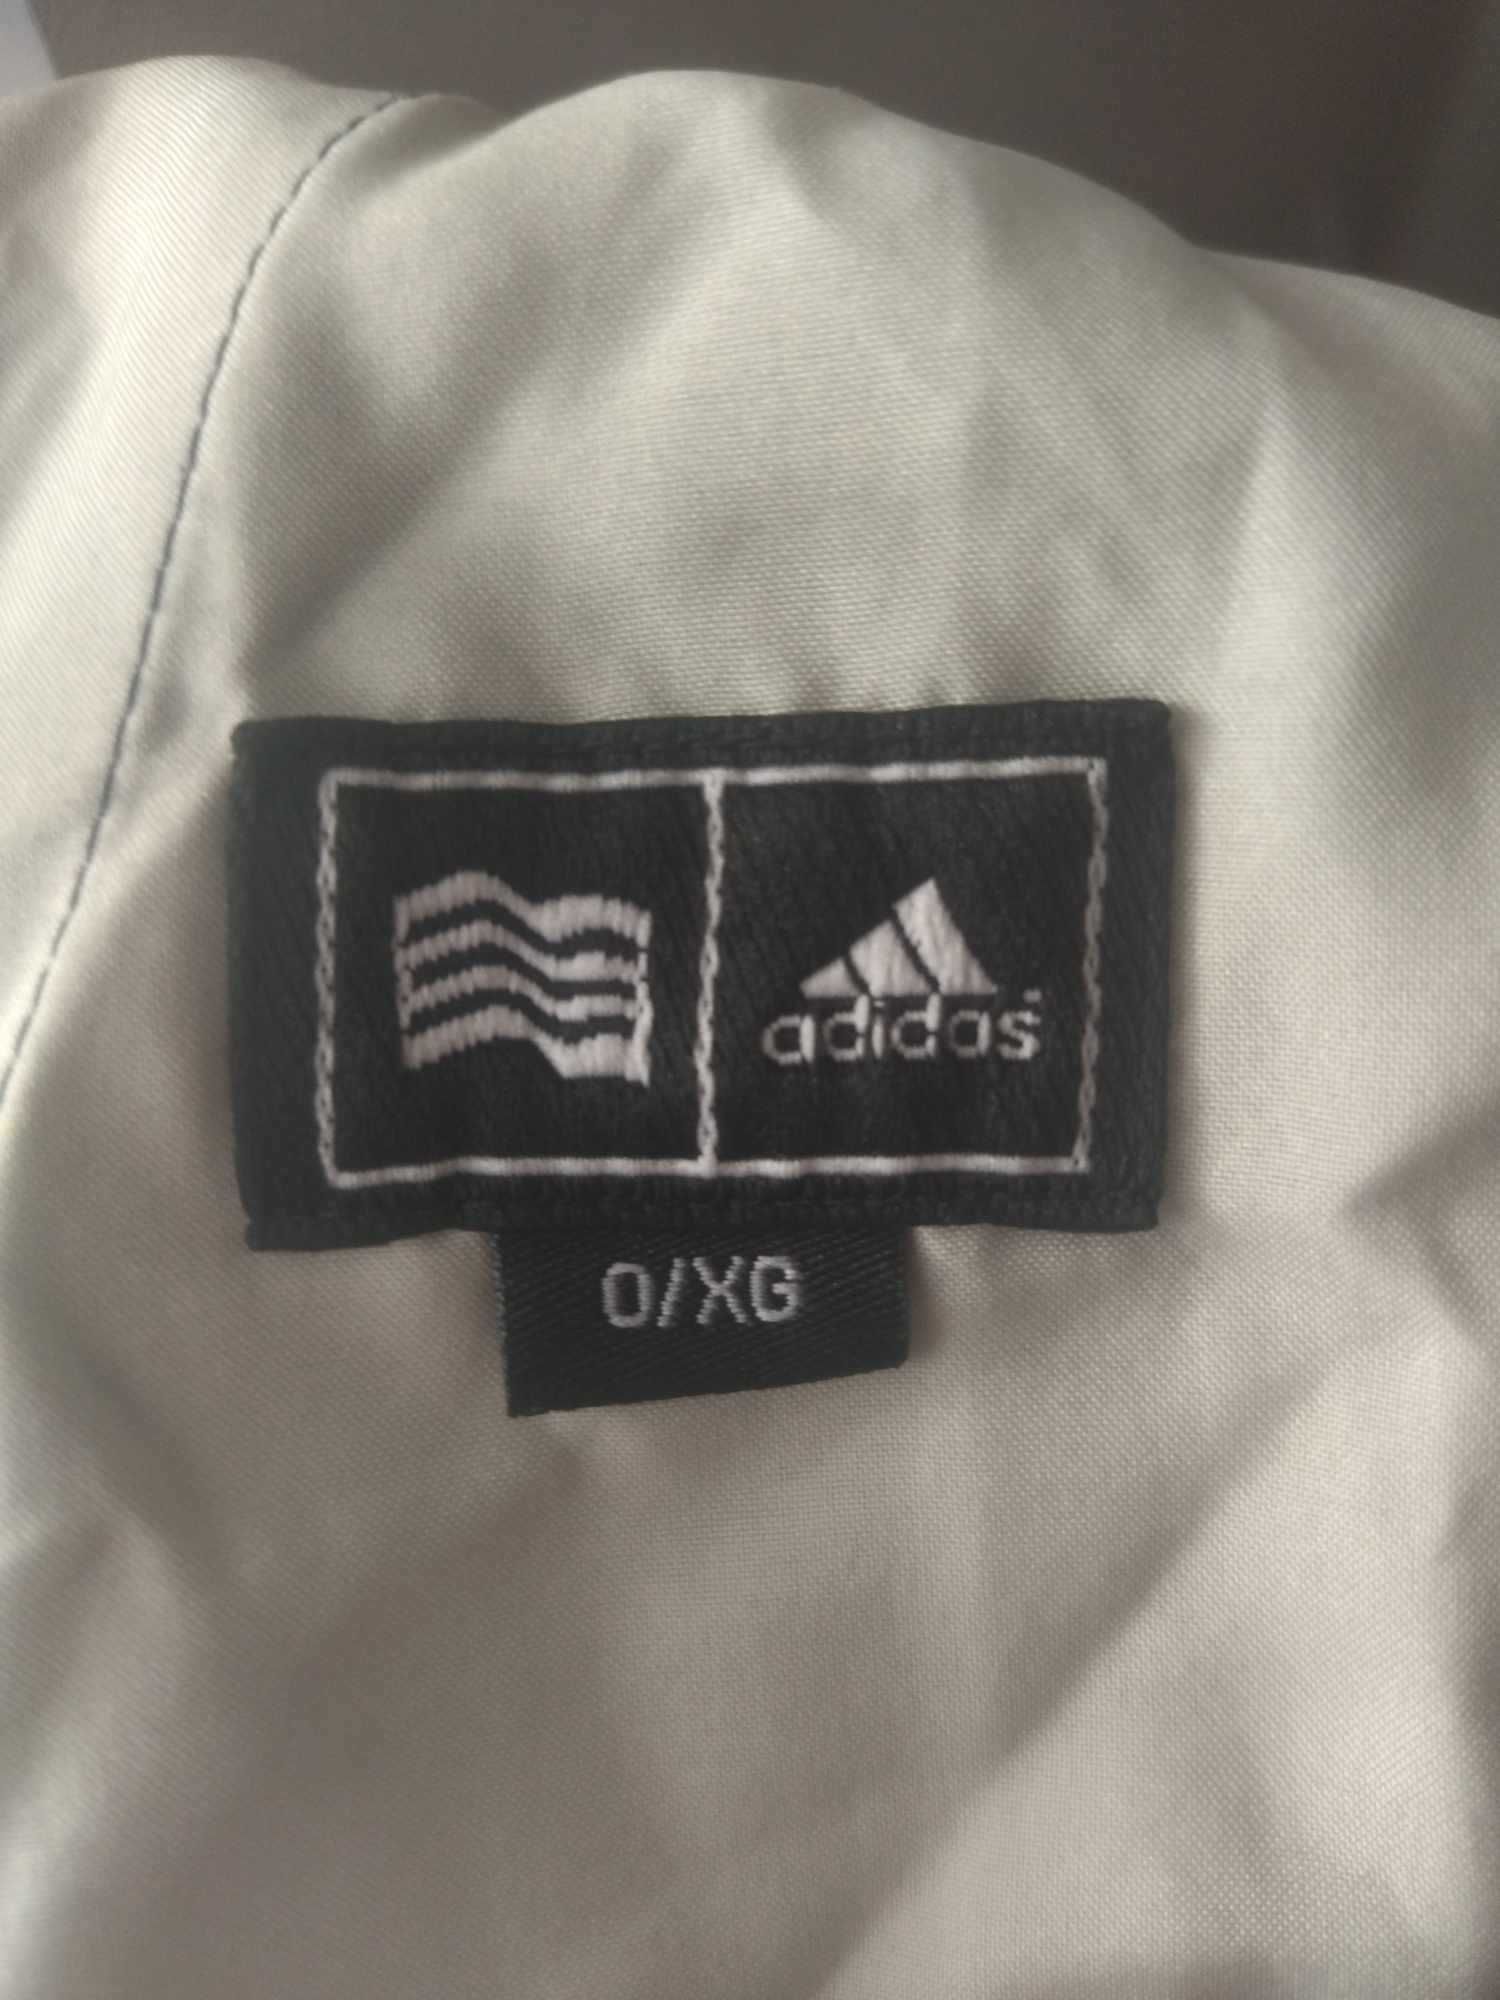 Spodenki długie Adidas O/XG